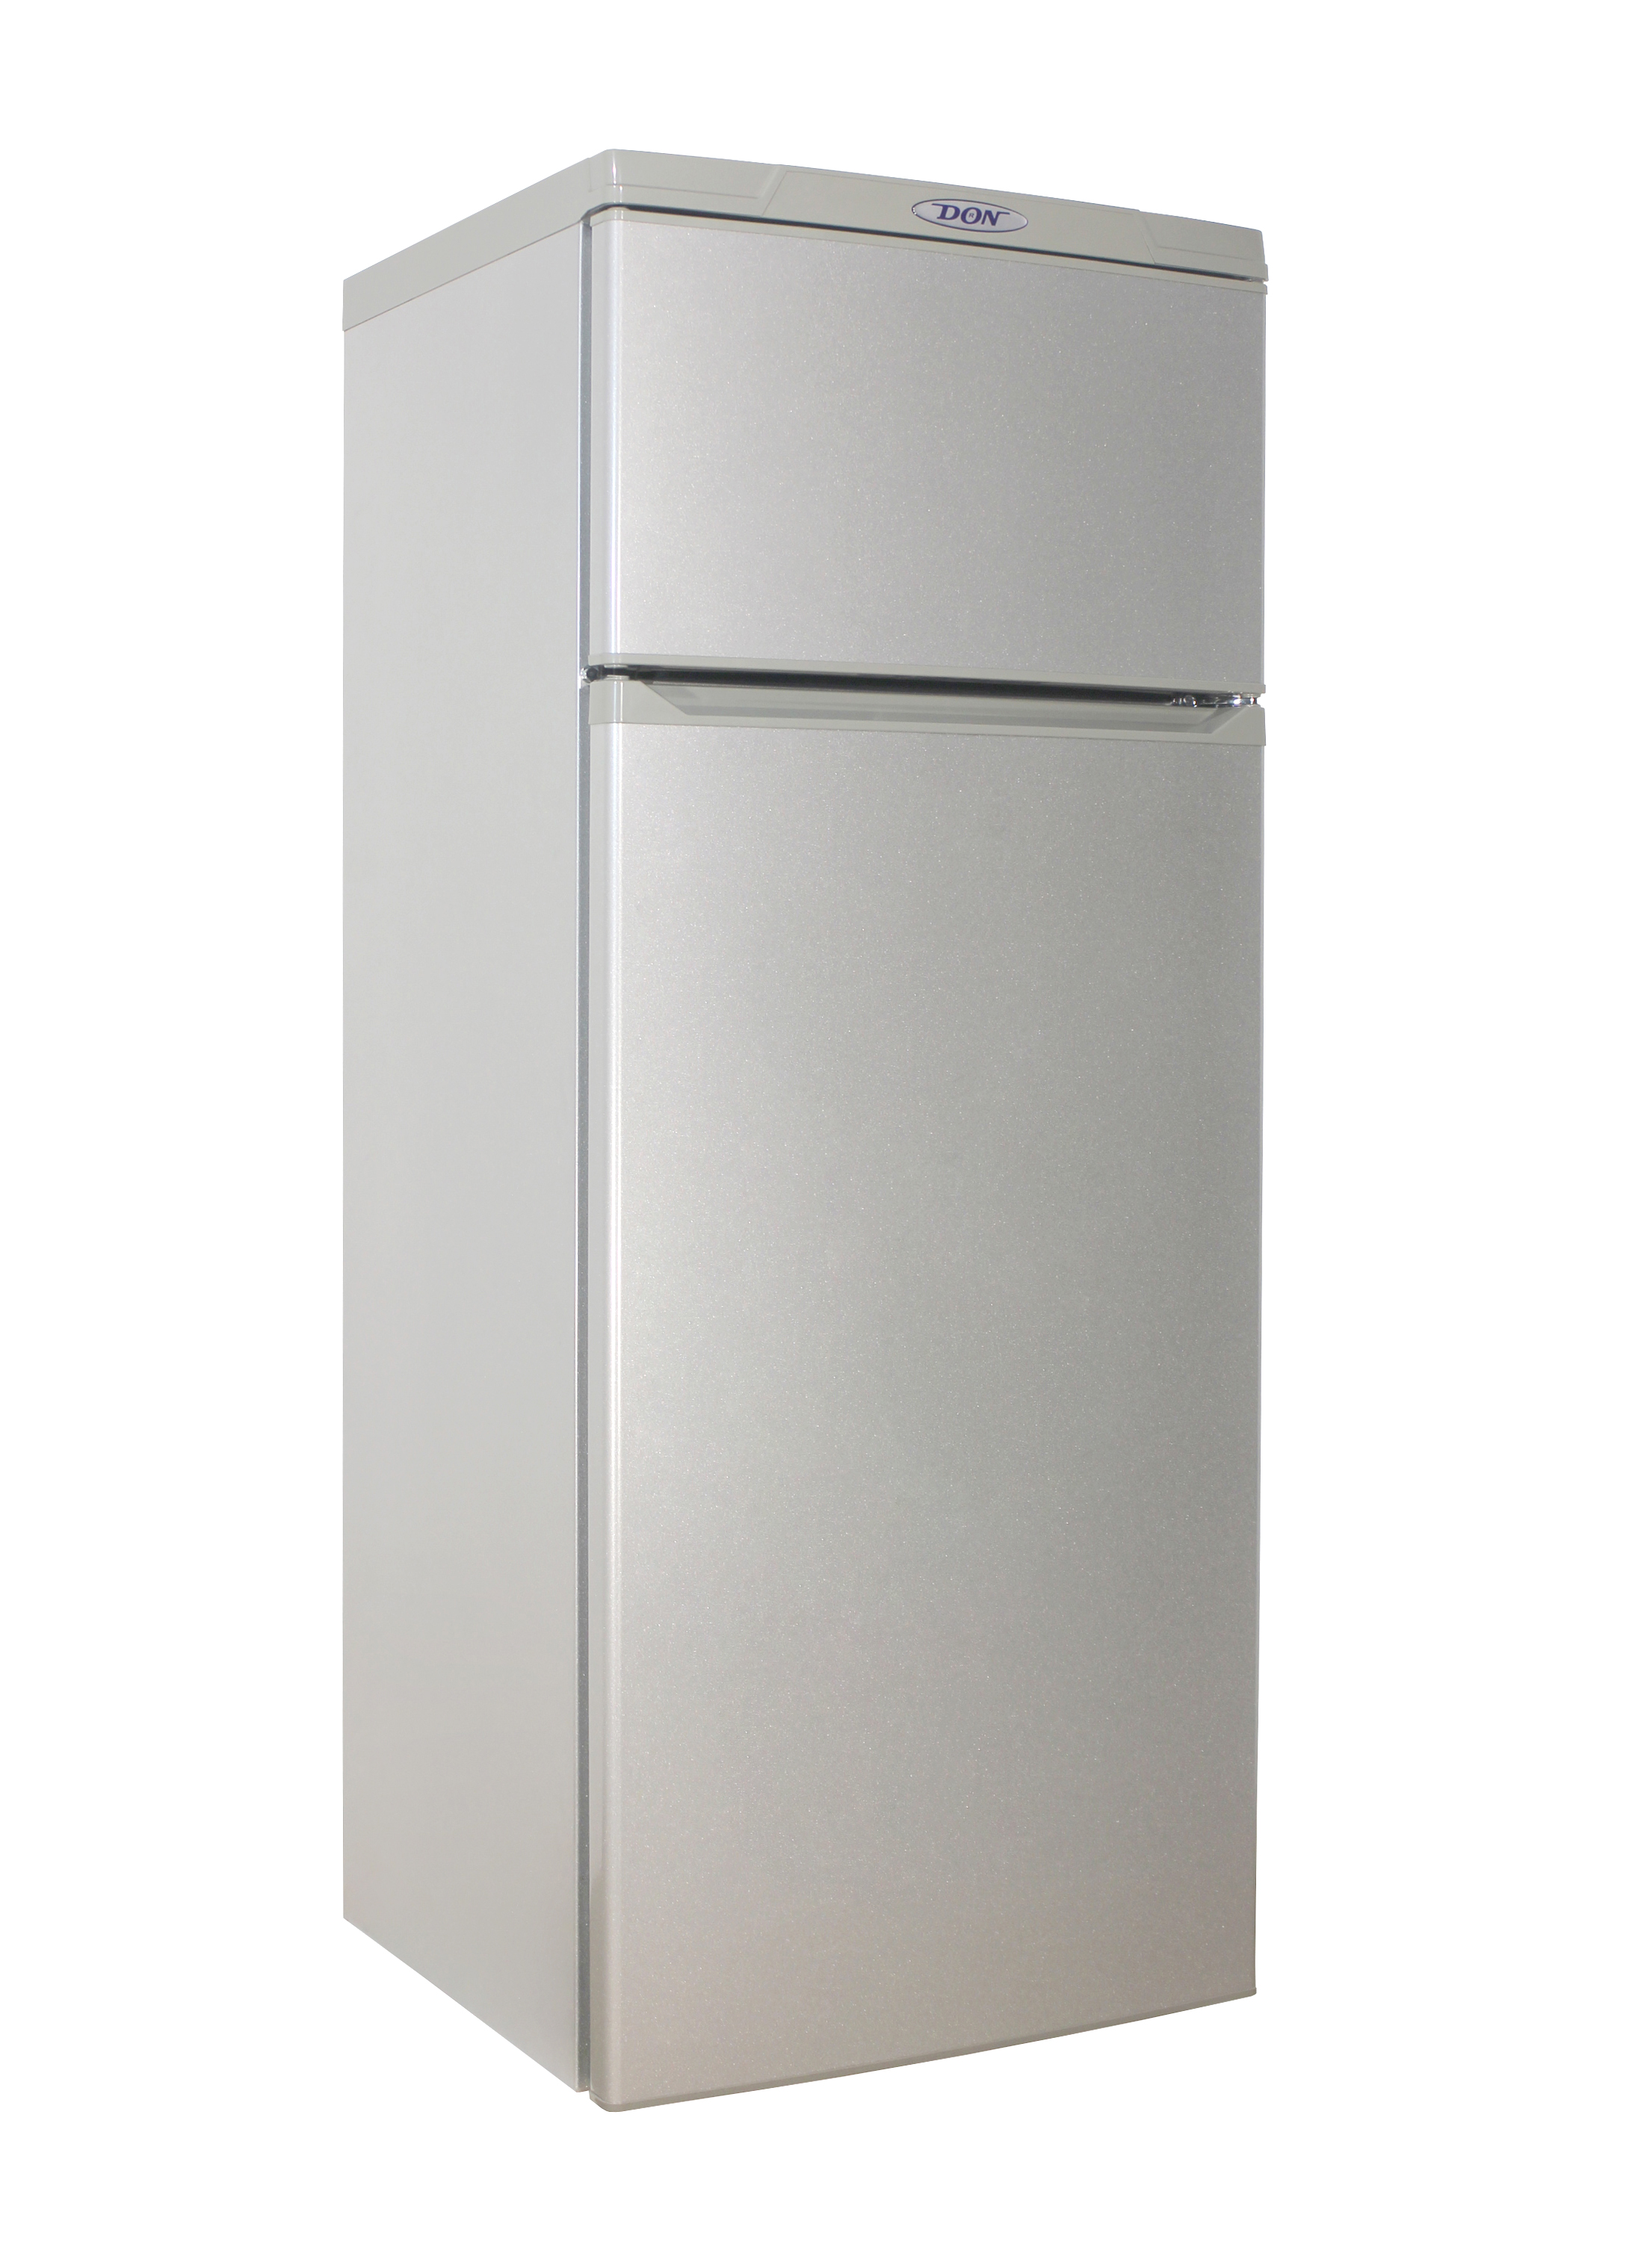 Эльдорадо купить холодильник недорогой. Холодильник don r-226 005 mi. Холодильник don r-226 mi. Don холодильник don r-216 mi. Холодильник двухкамерный don r-216 mi.